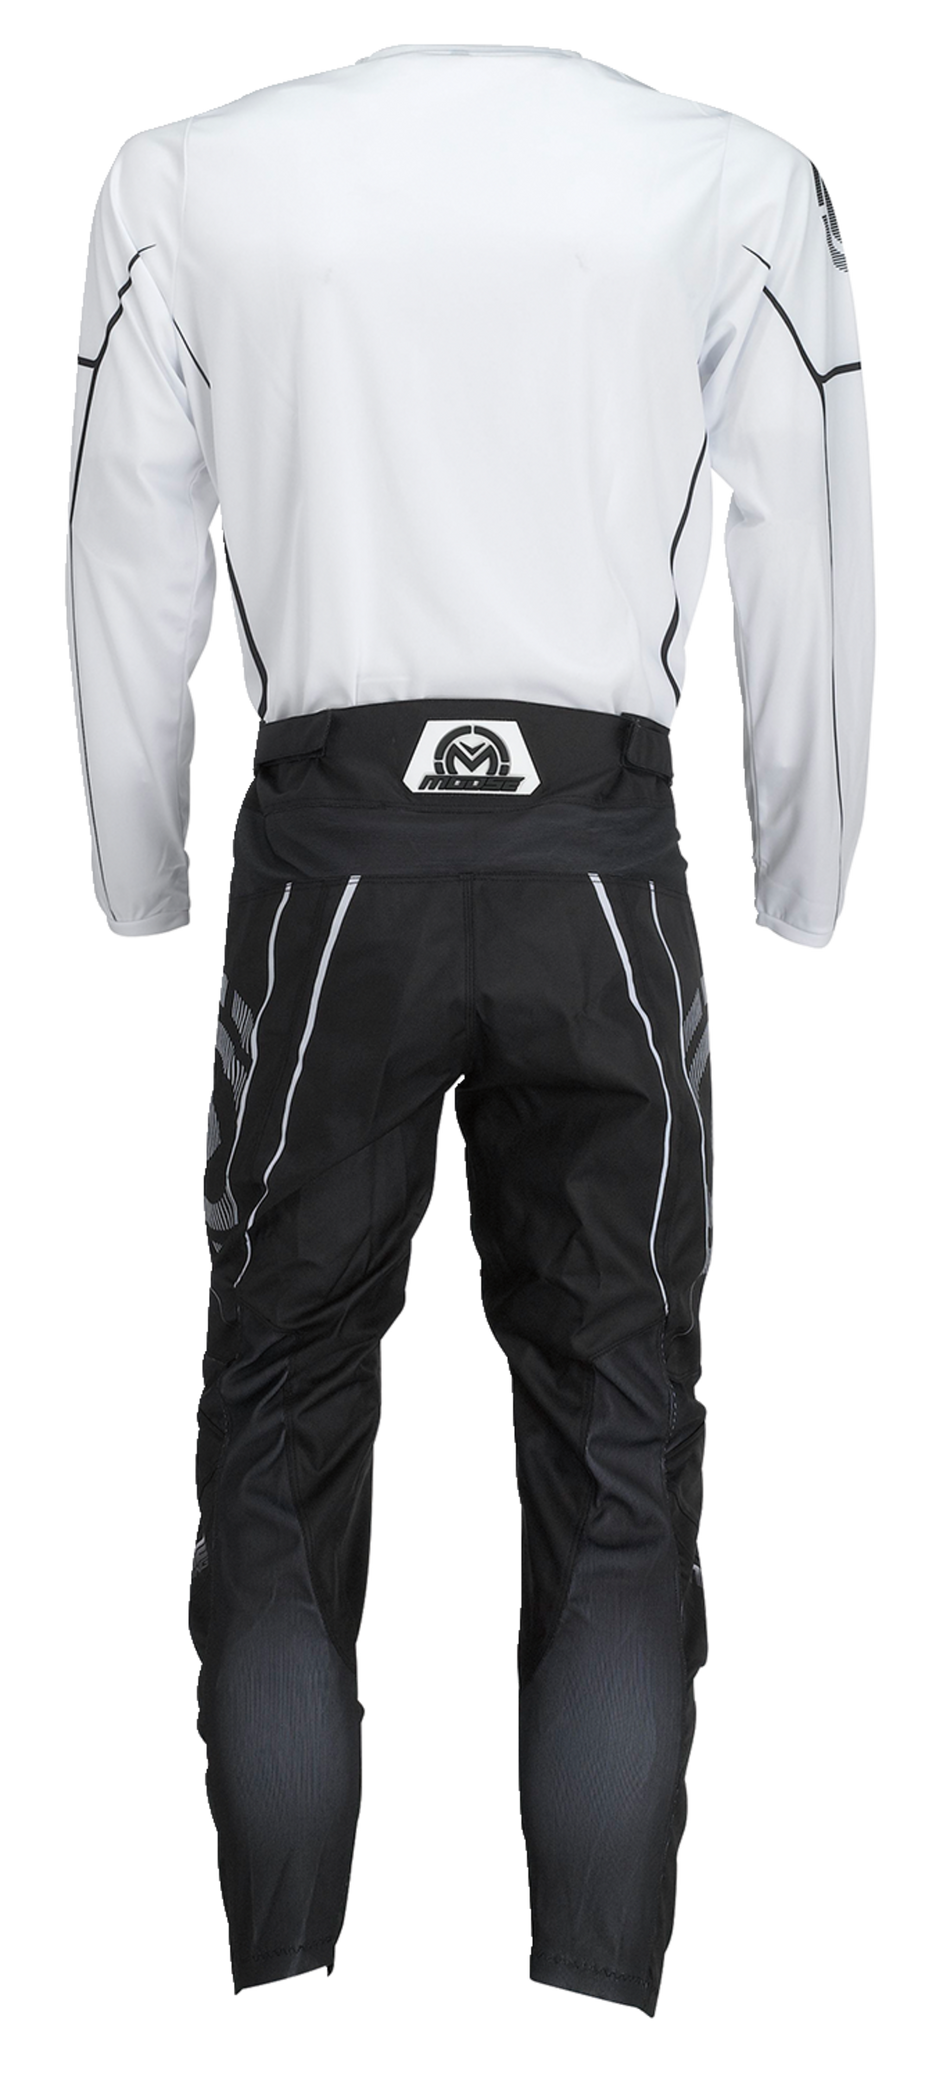 MOOSE RACING Qualifier® Jersey - Black/White - Large 2910-7190